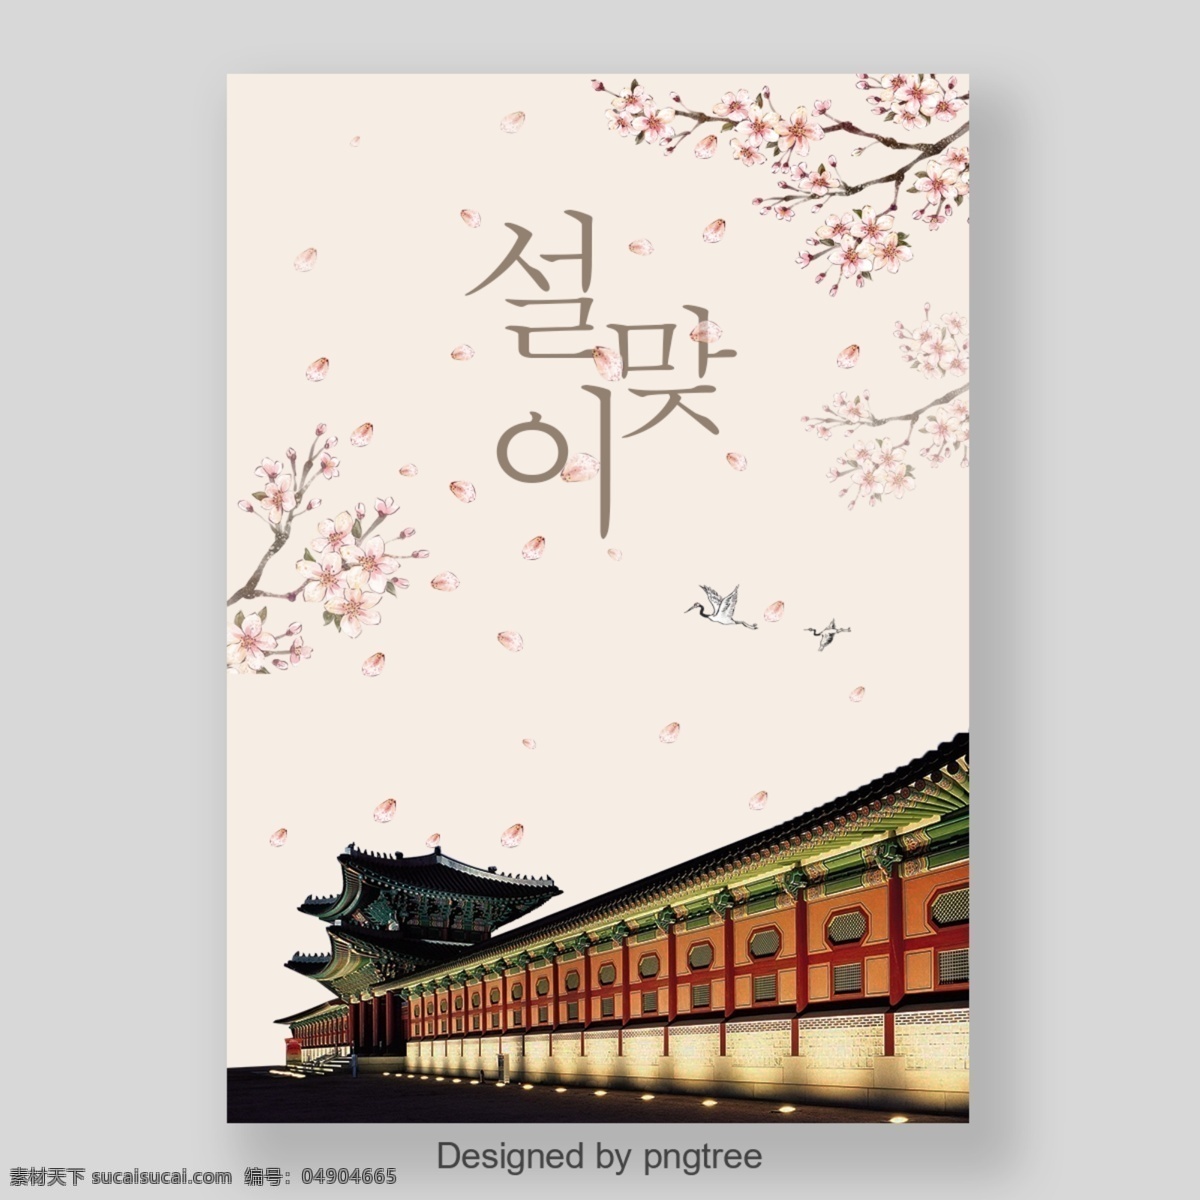 时尚 韩国 新年 海报 彩色 墨水 花 新 新的一年 墨 屋 厦门 颜色 天空 乌贼 屋顶 灰色背景